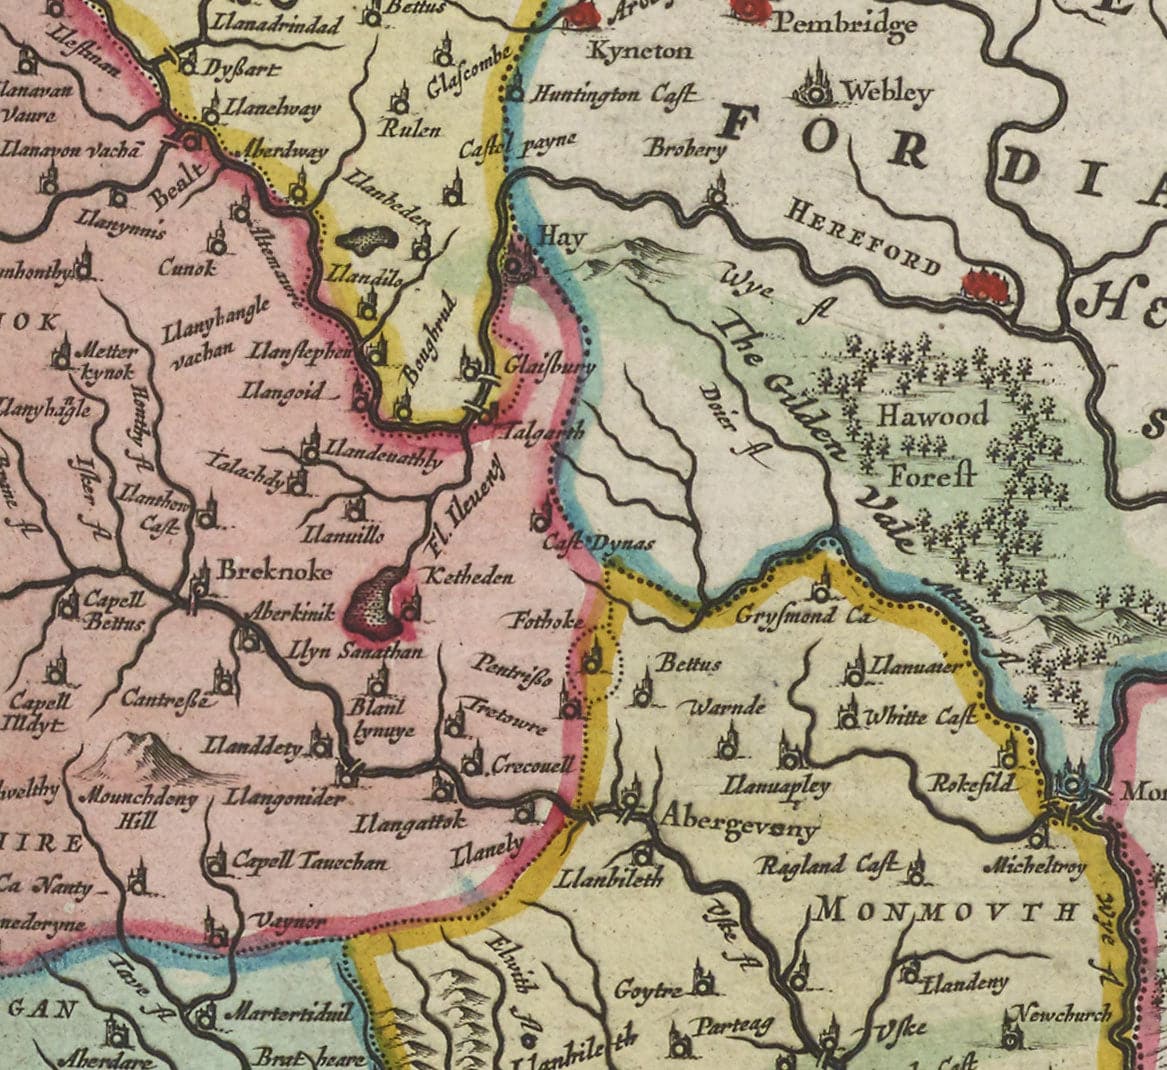 Rare carte ancienne du Pays de Galles par Jean Blaeu, 1645 - tirée du Theatrum Orbis Terrarum Sive Atlas Novus